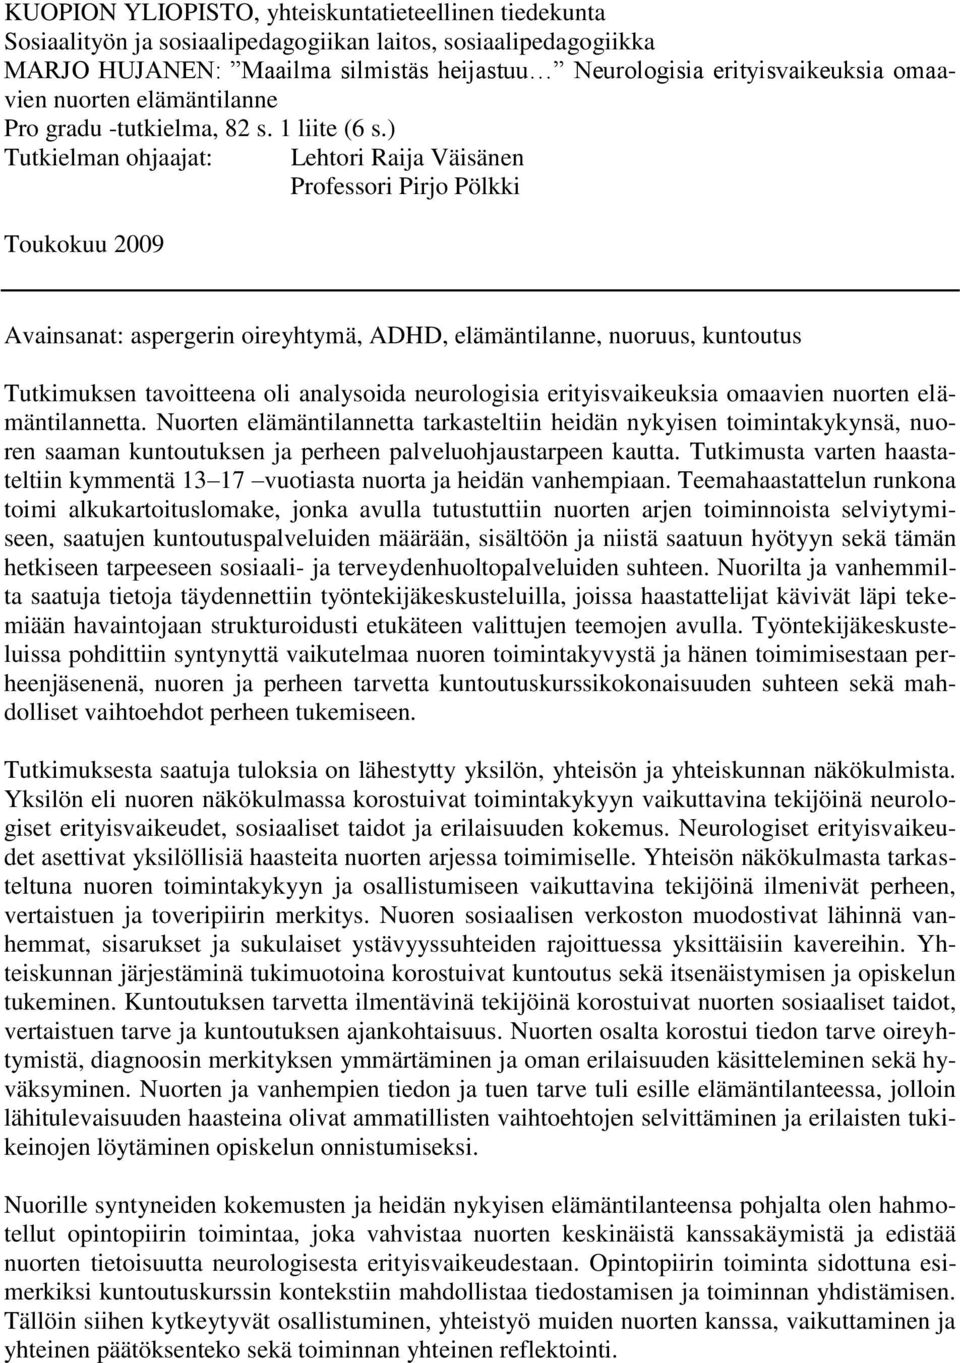 ) Tutkielman ohjaajat: Lehtori Raija Väisänen Professori Pirjo Pölkki Toukokuu 2009 Avainsanat: aspergerin oireyhtymä, ADHD, elämäntilanne, nuoruus, kuntoutus Tutkimuksen tavoitteena oli analysoida